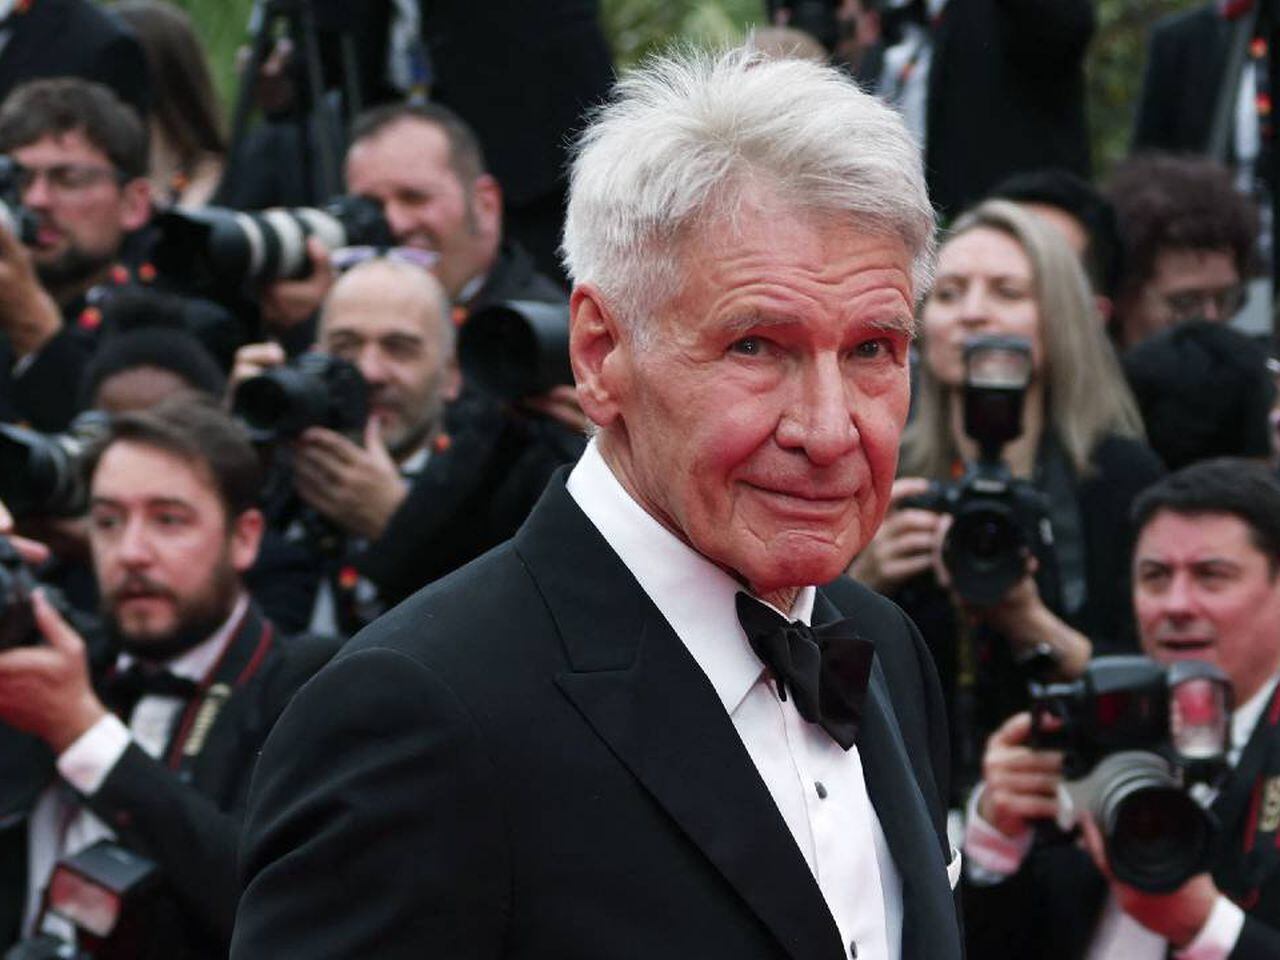 Indiana Jones: Harrison Ford vuelve a dar latigazos a los 80 años - Cine y  Tv - Cultura 